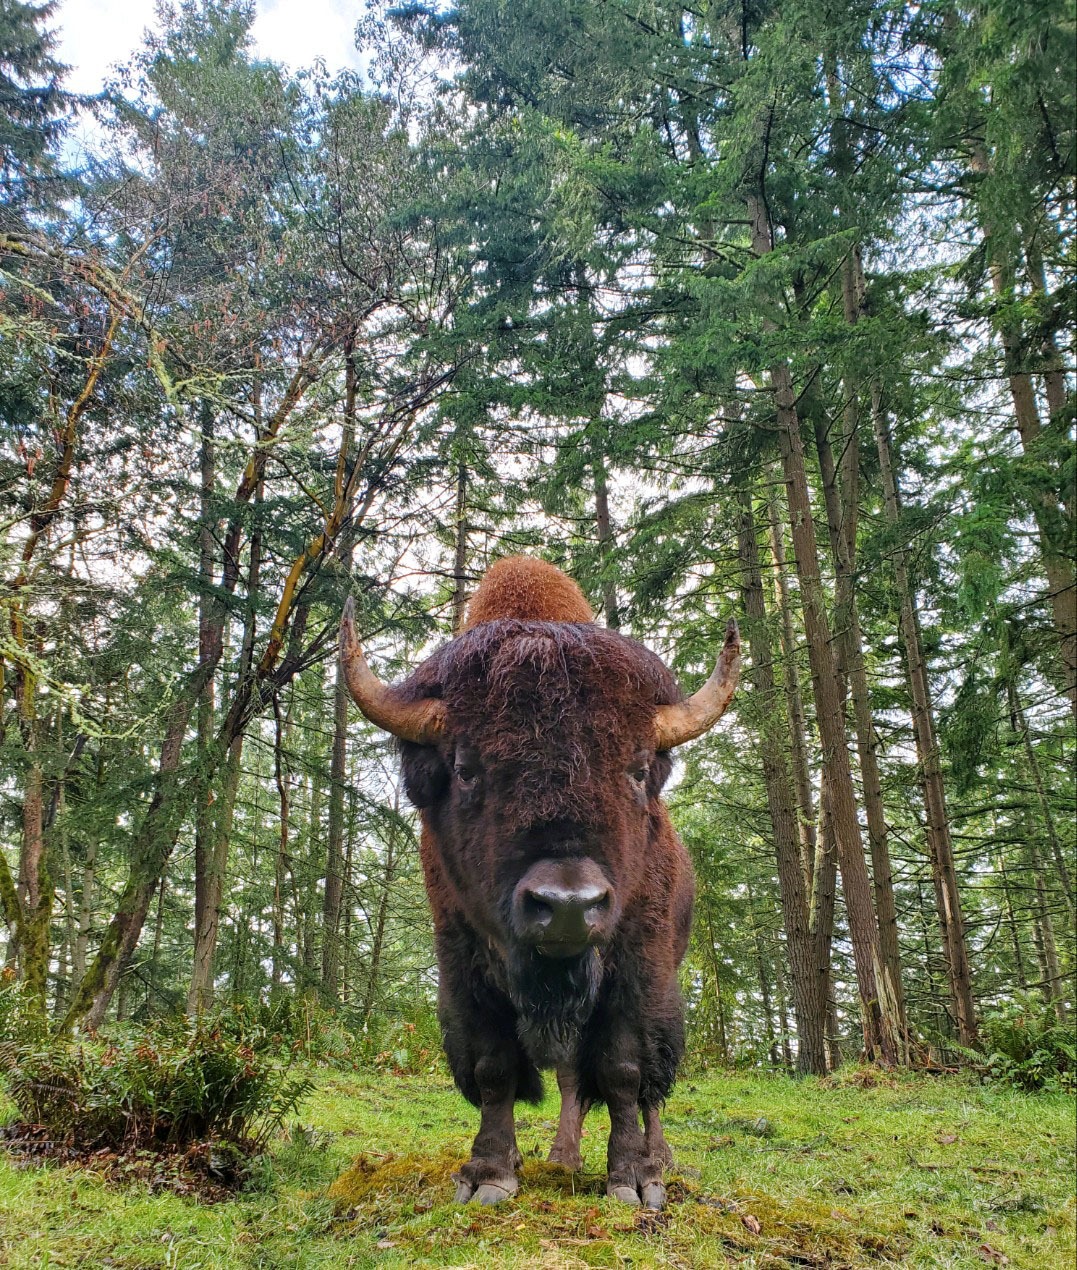 bison on grass